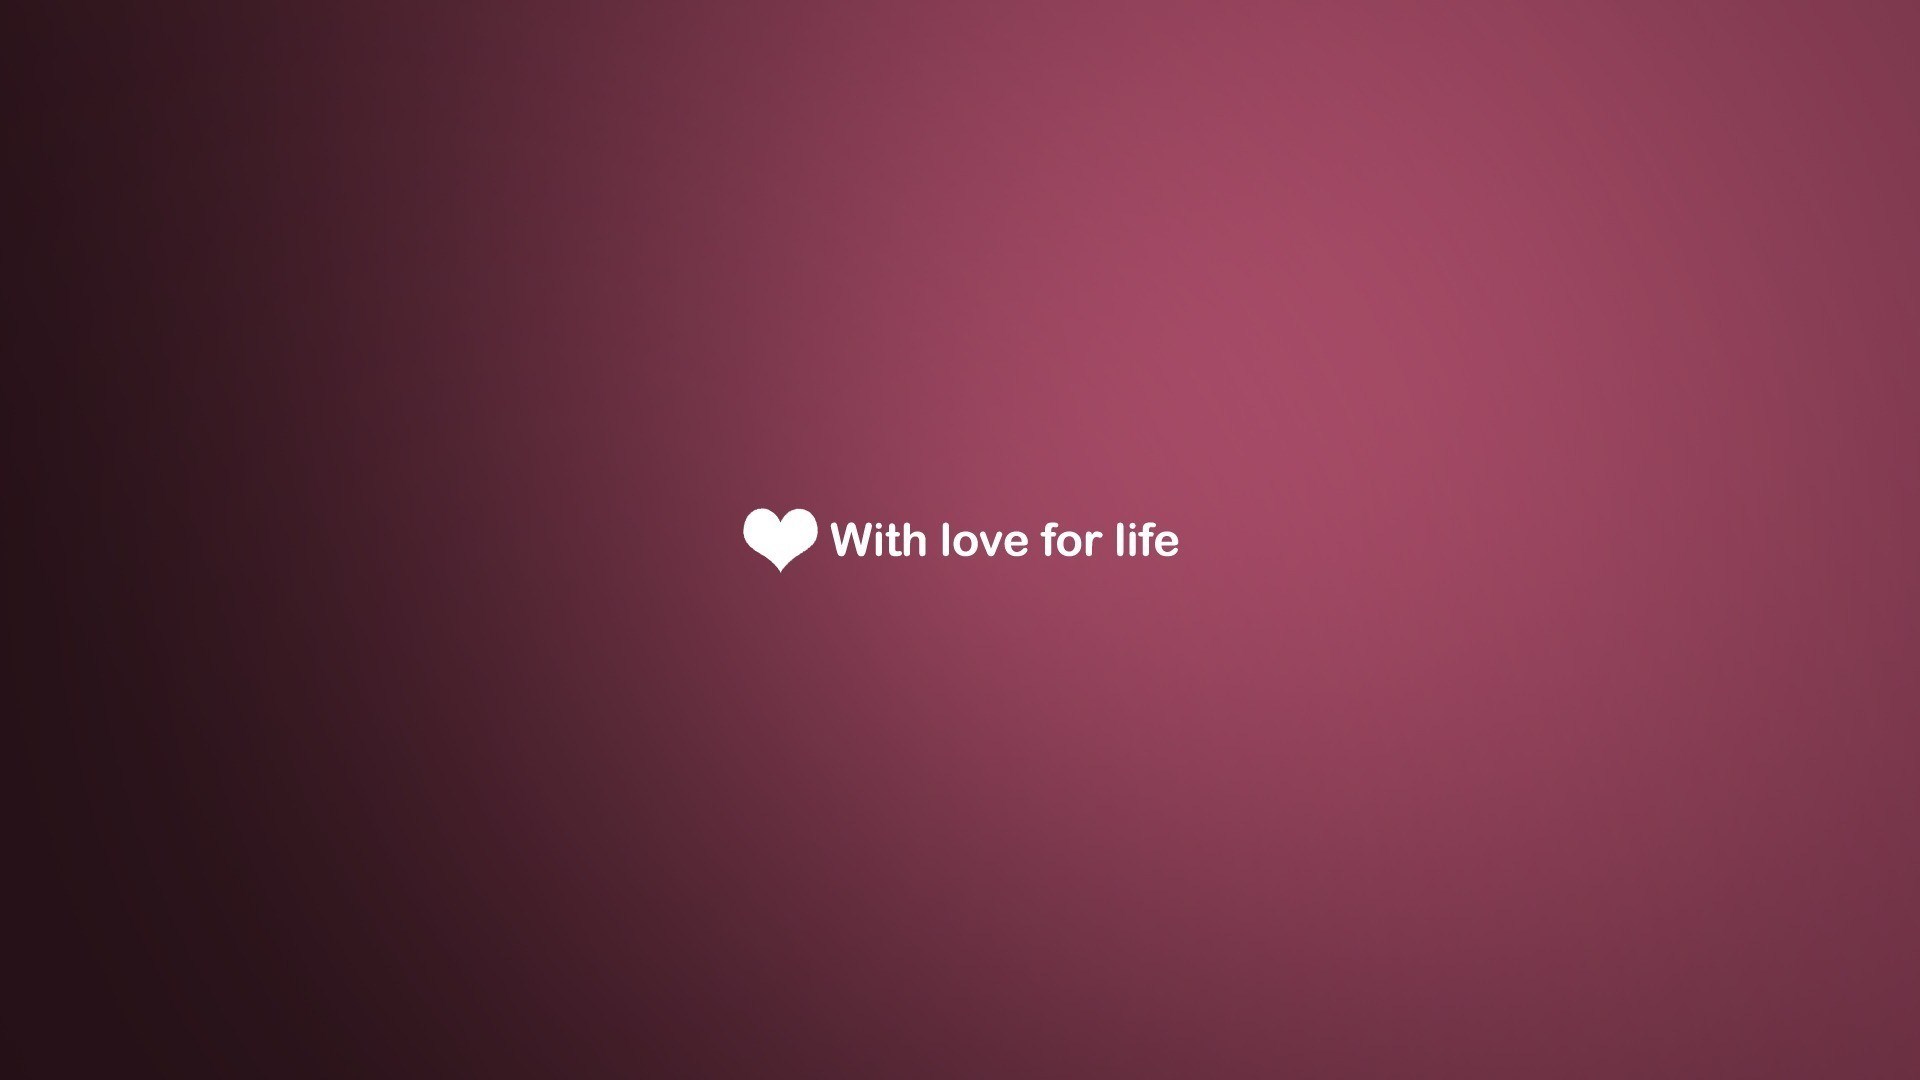 amor vida fondo de pantalla,texto,violeta,rosado,rojo,púrpura